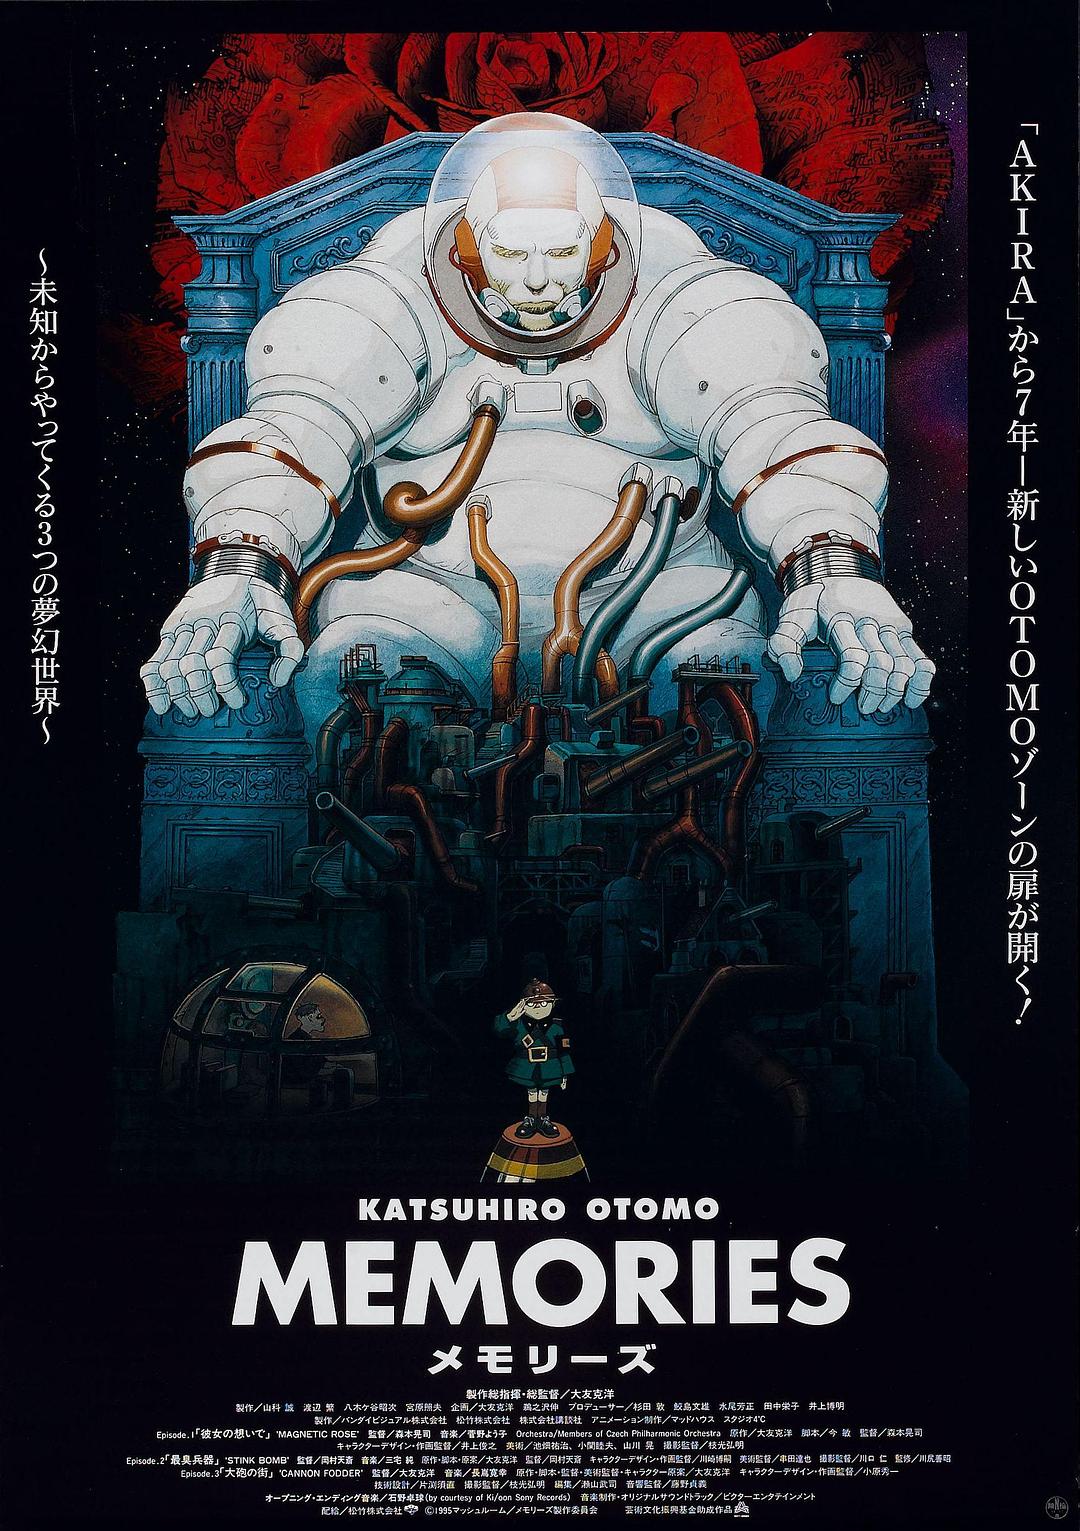 回忆三部曲/记忆 Memories.1995.JAPANESE.1080p.BluRay.REMUX.AVC.TrueHD.5.1-FGT 30.58GB-1.png